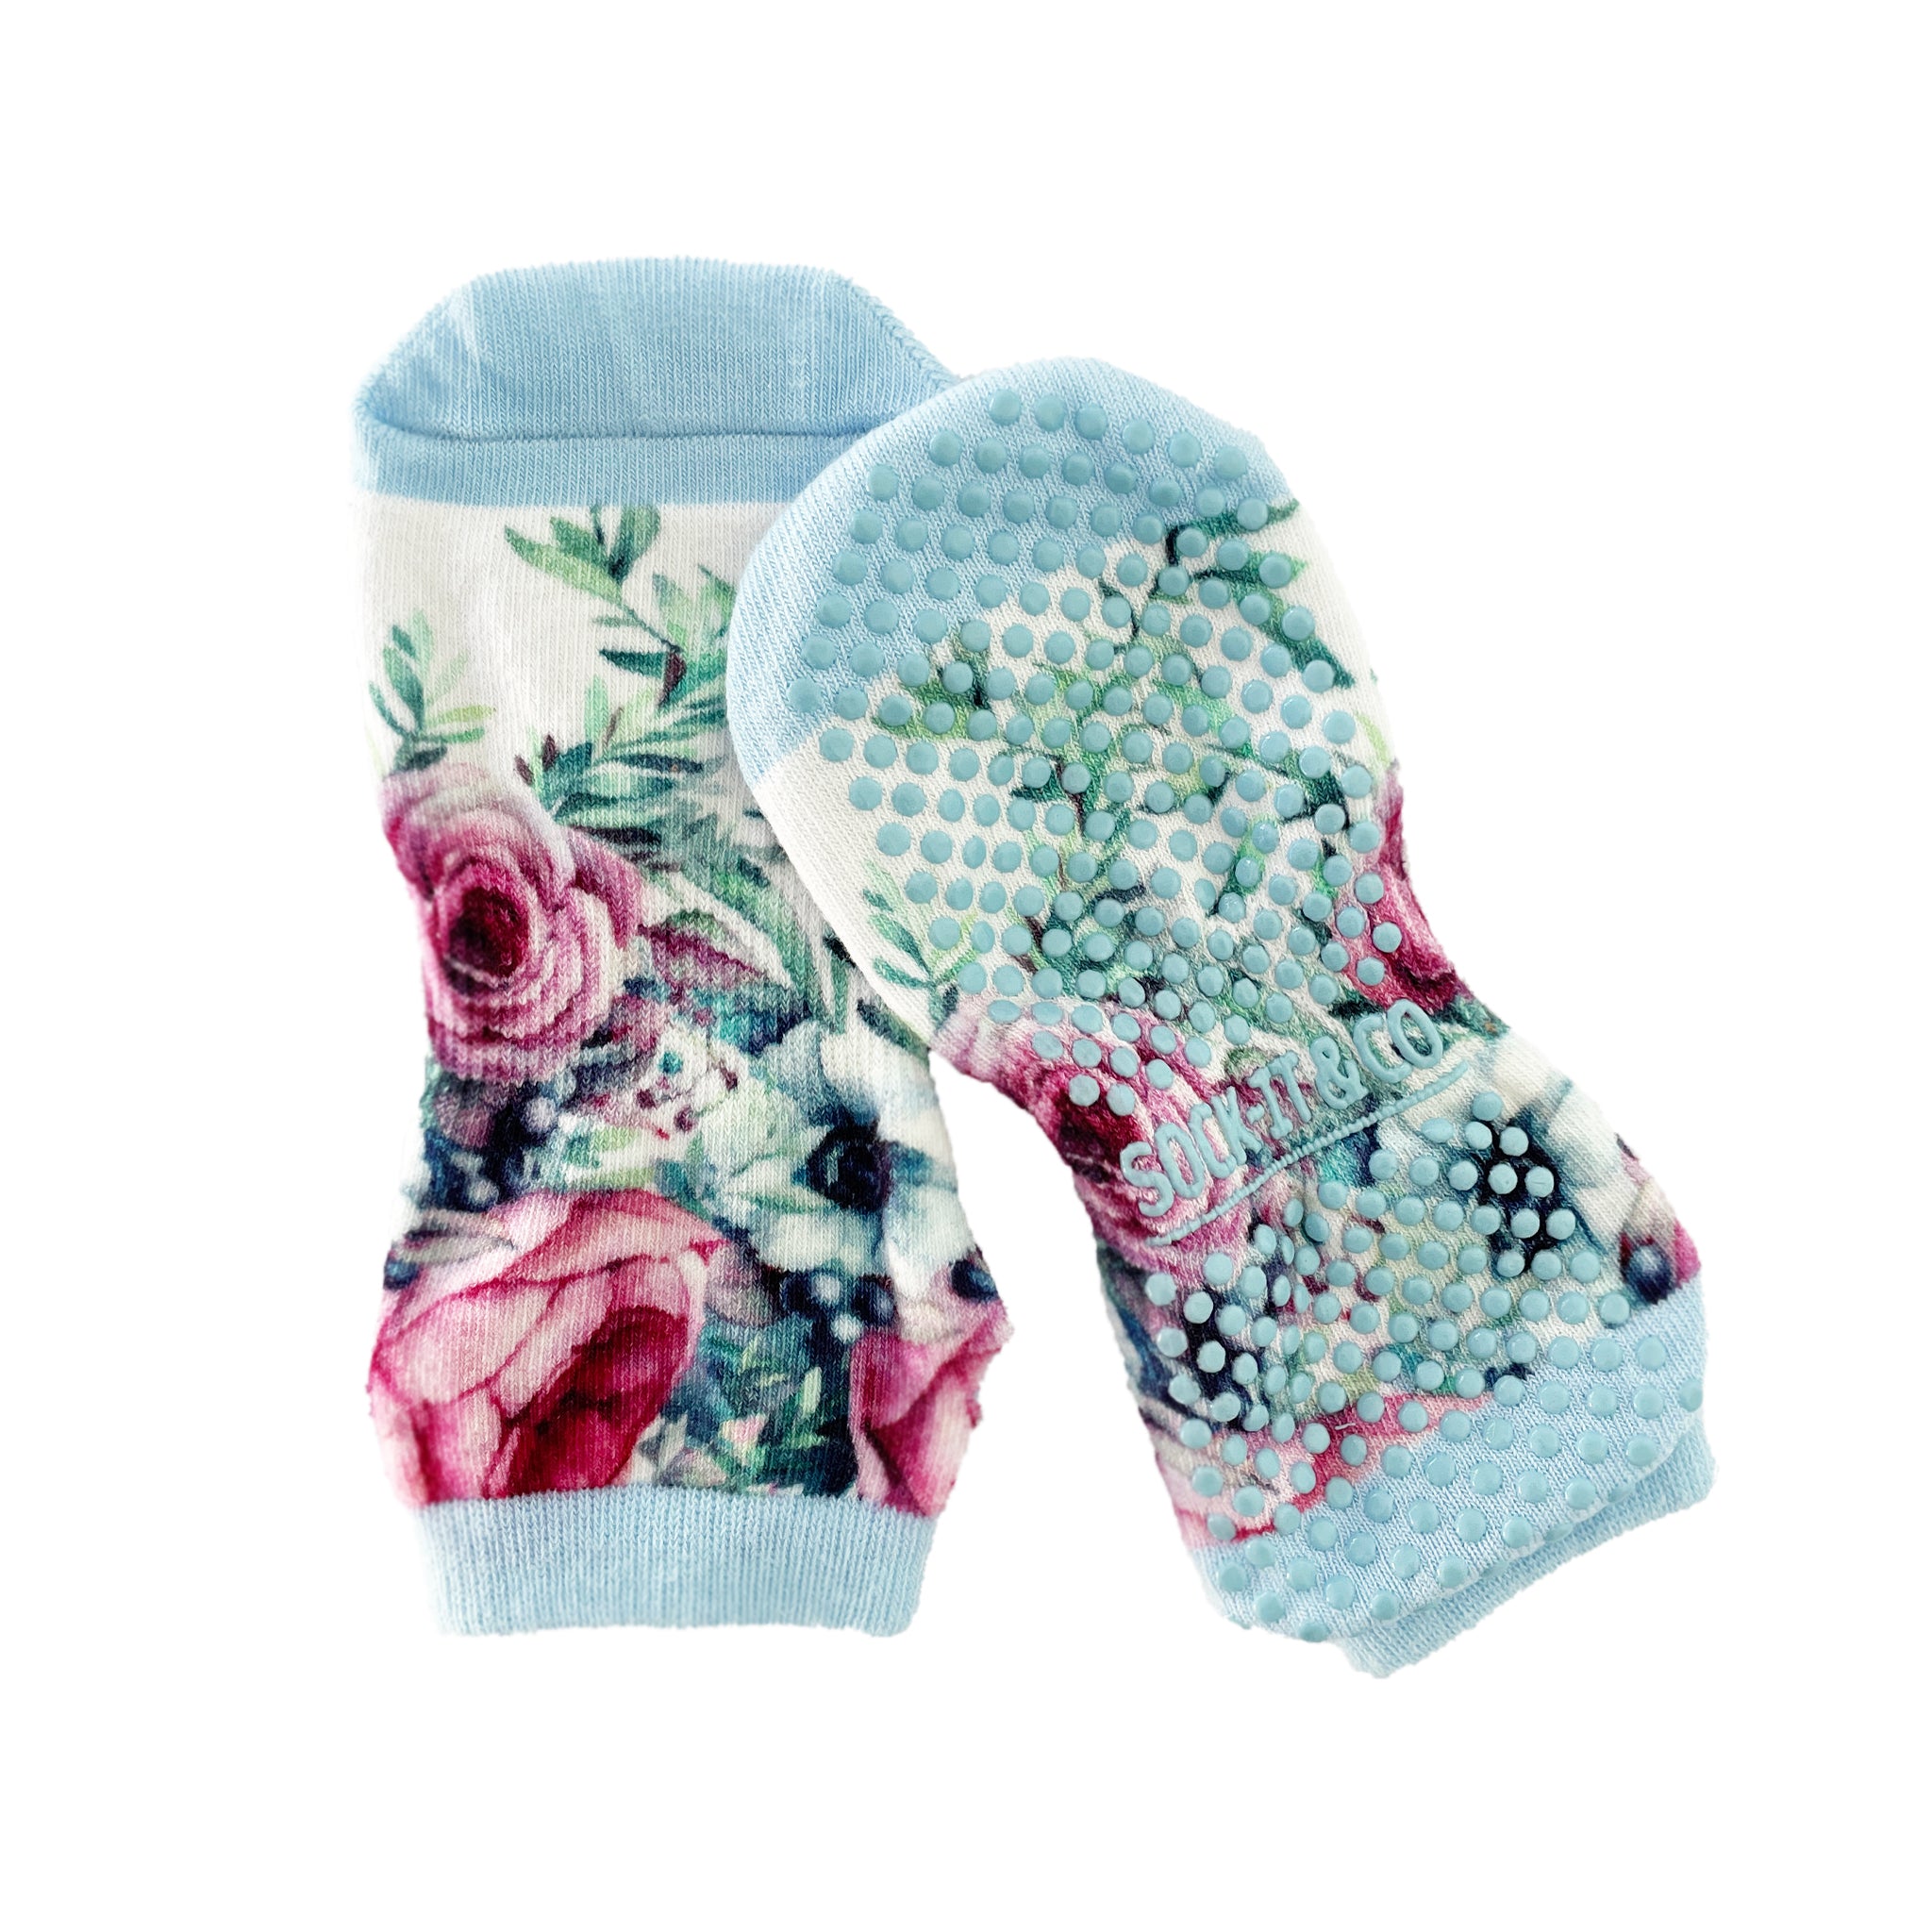 Non-Slip Grip Yoga Socks with Straps Studio Socks for Women Pink 3